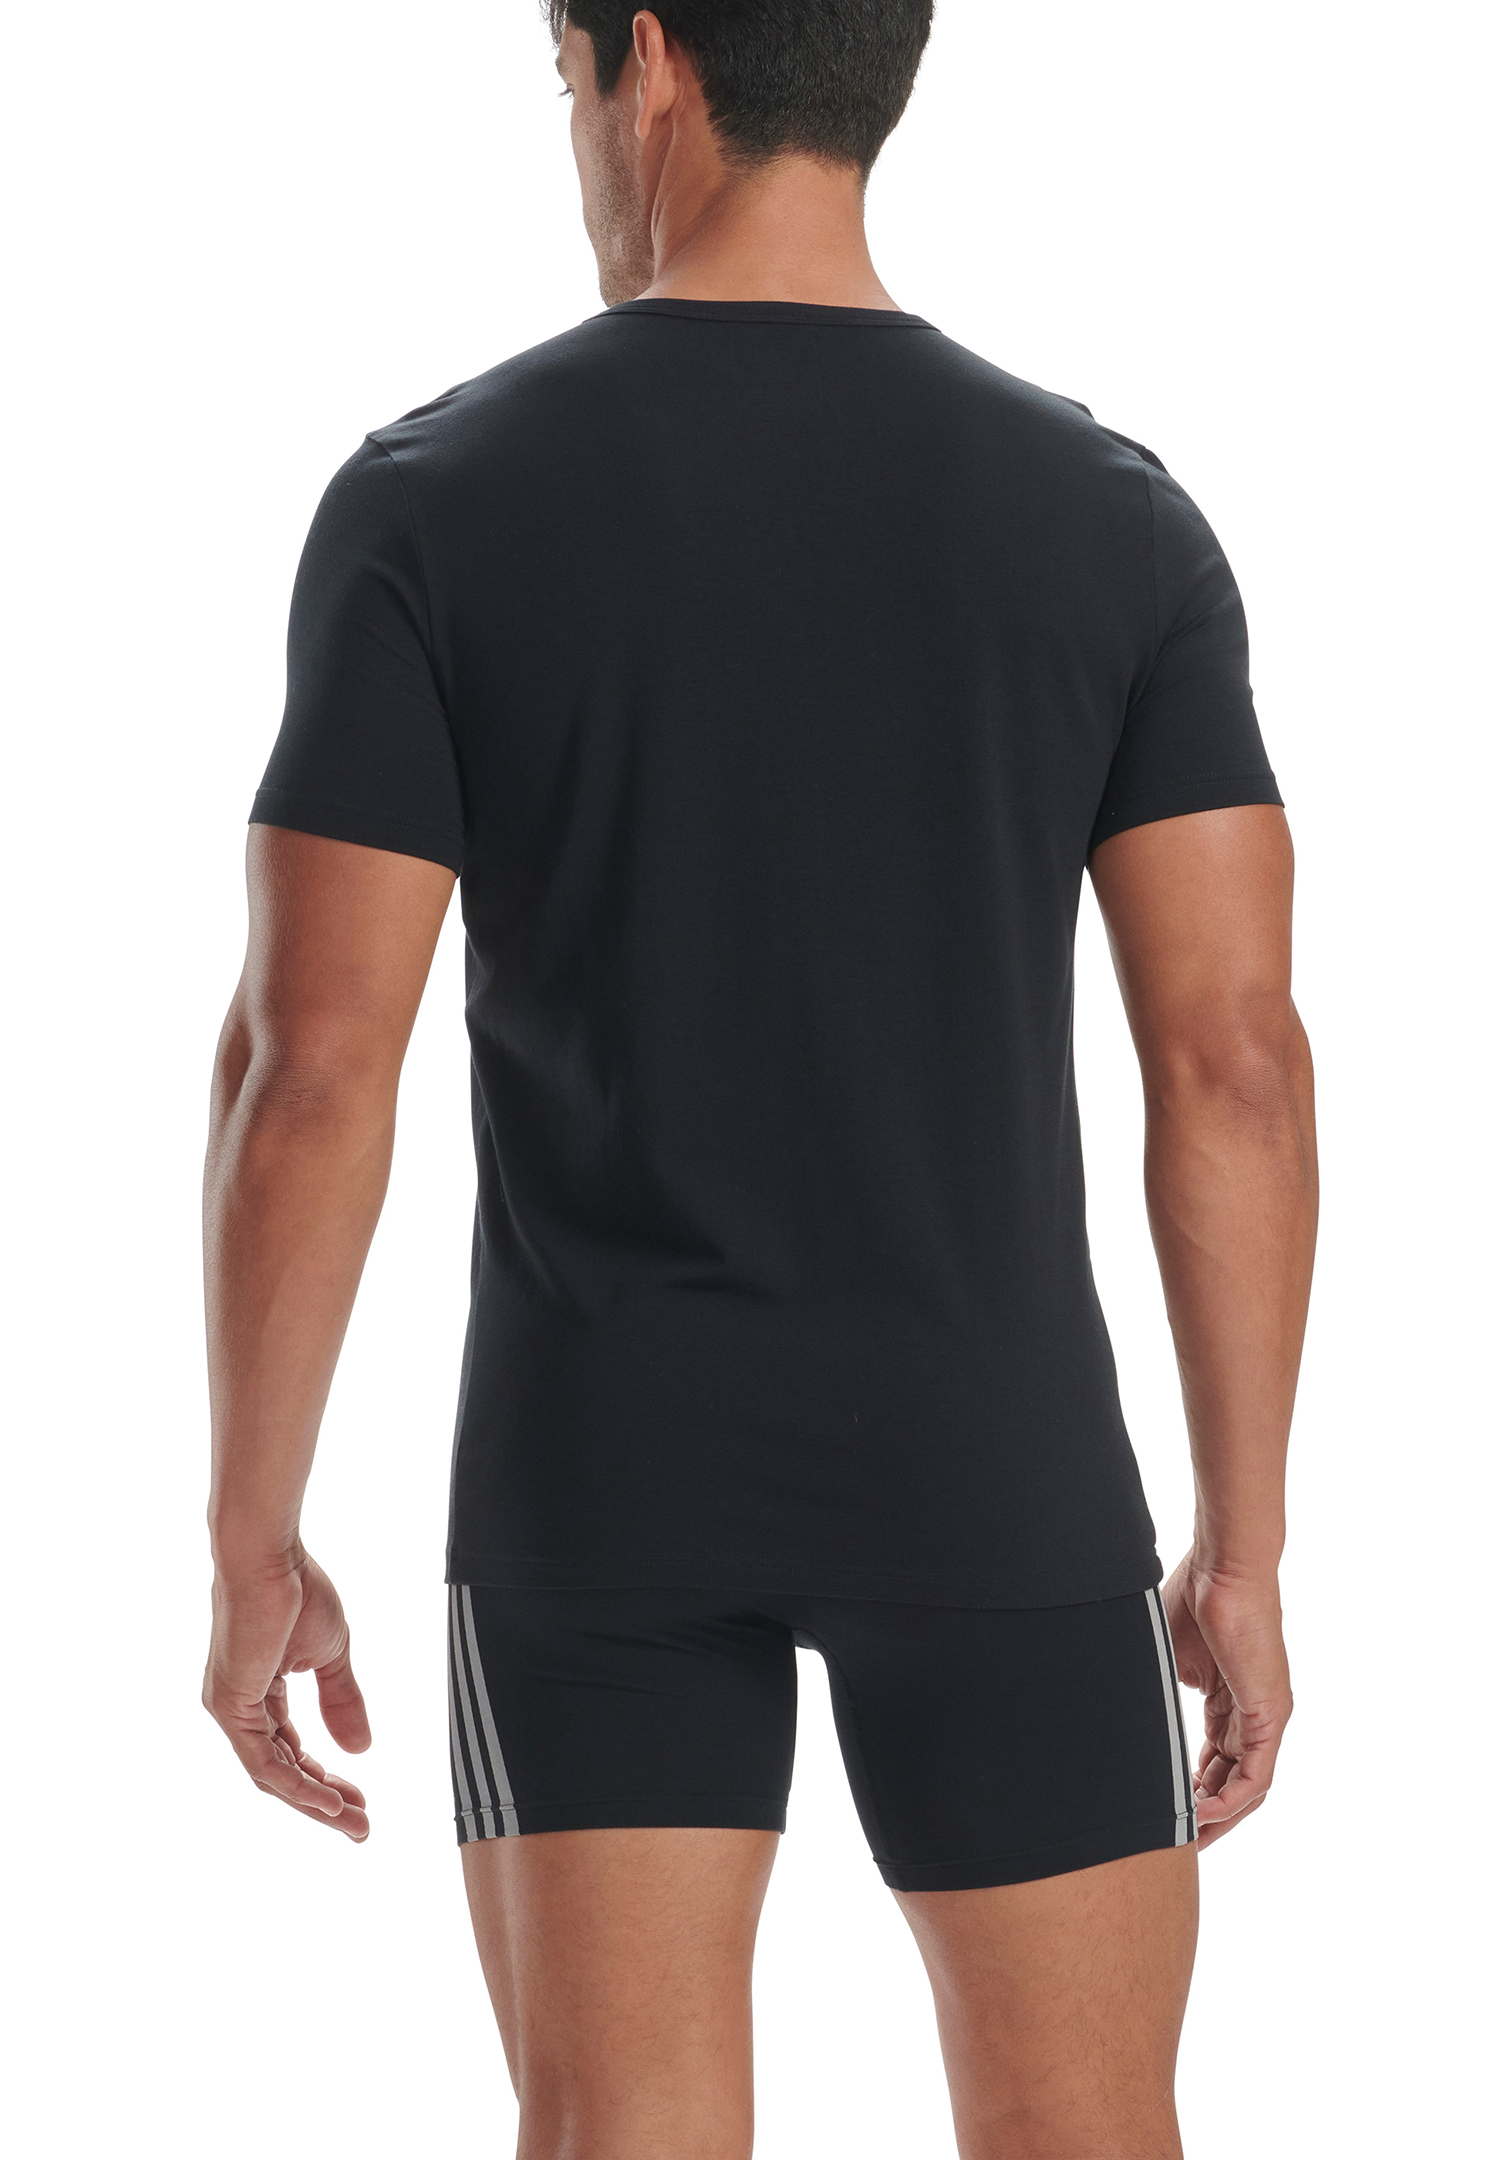 adidas V-Neck T-Shirt Men Herren Unterhemd V-Ausschnitt langlebig 2 er Pack